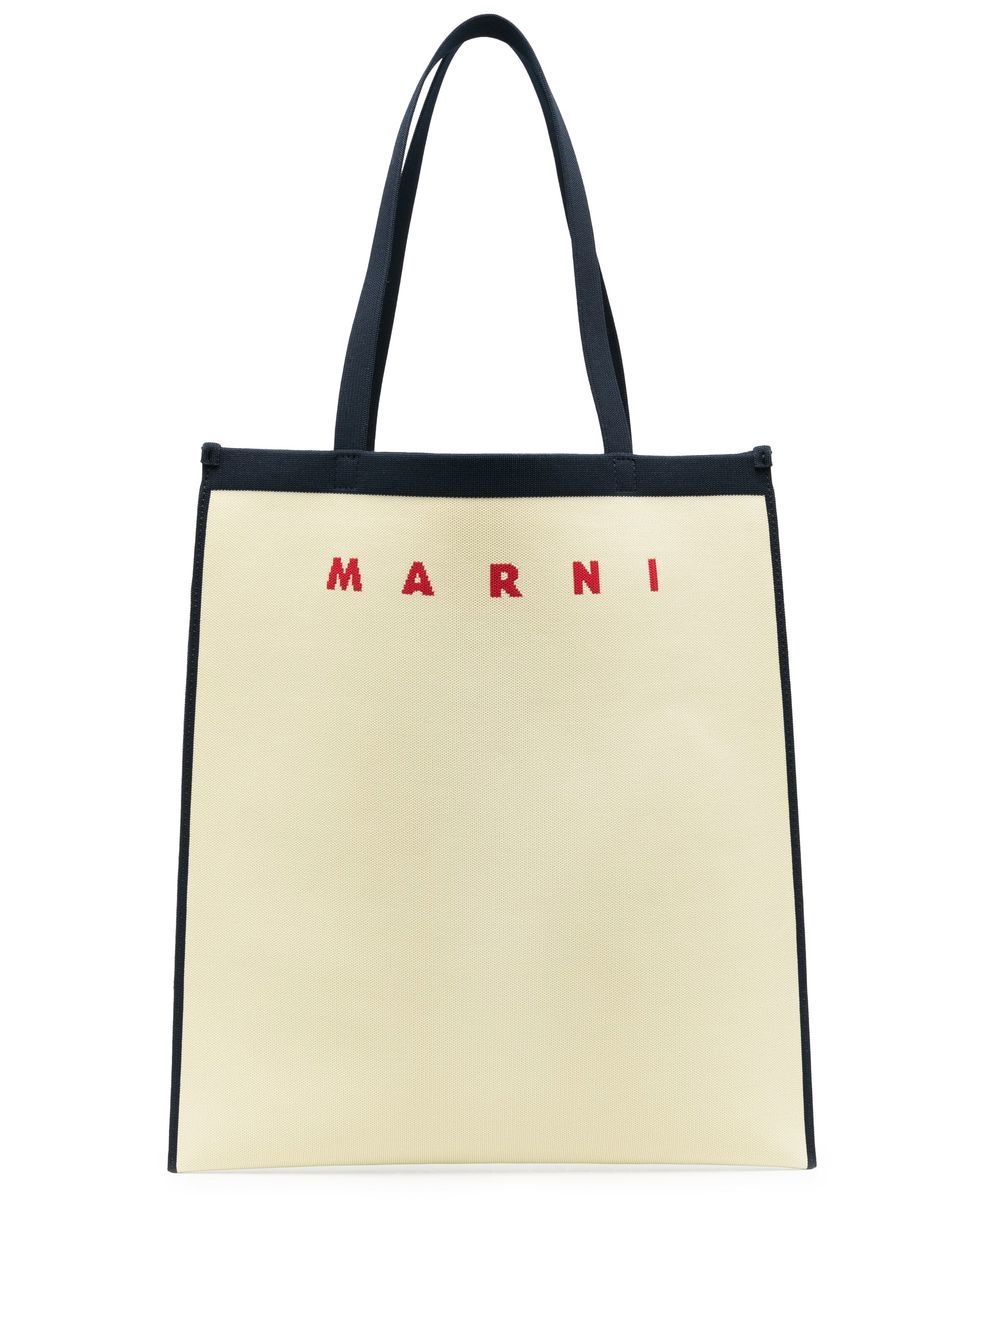 Marni logo embroidery tote bag - Blue von Marni